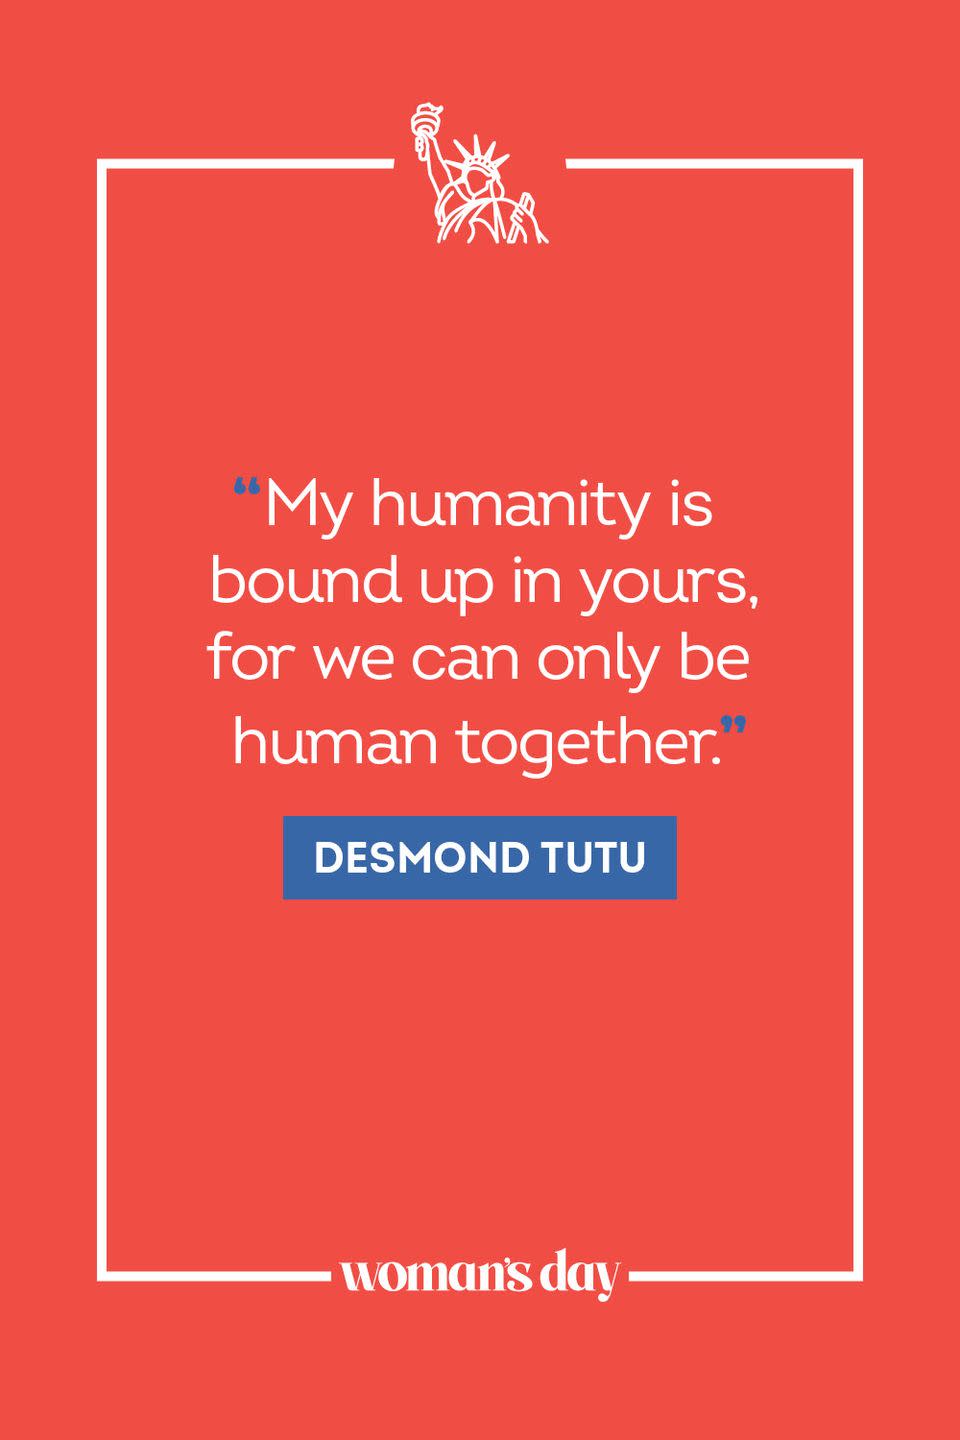 39) Desmond Tutu